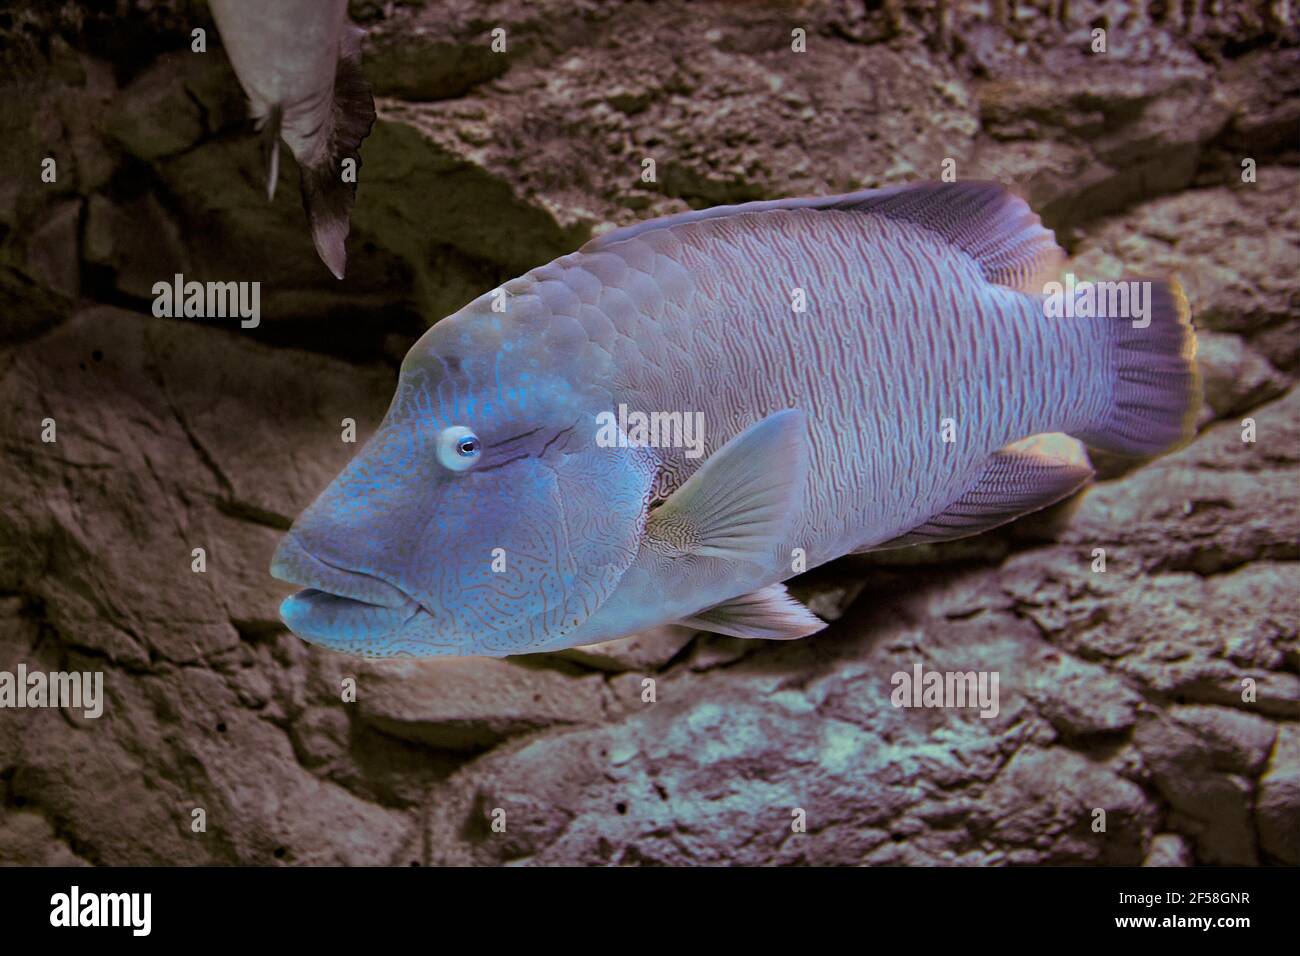 Fish named of Humphead Maori Wrasse or Cheilinus undulatus in aquarium fish tank. Stock Photo